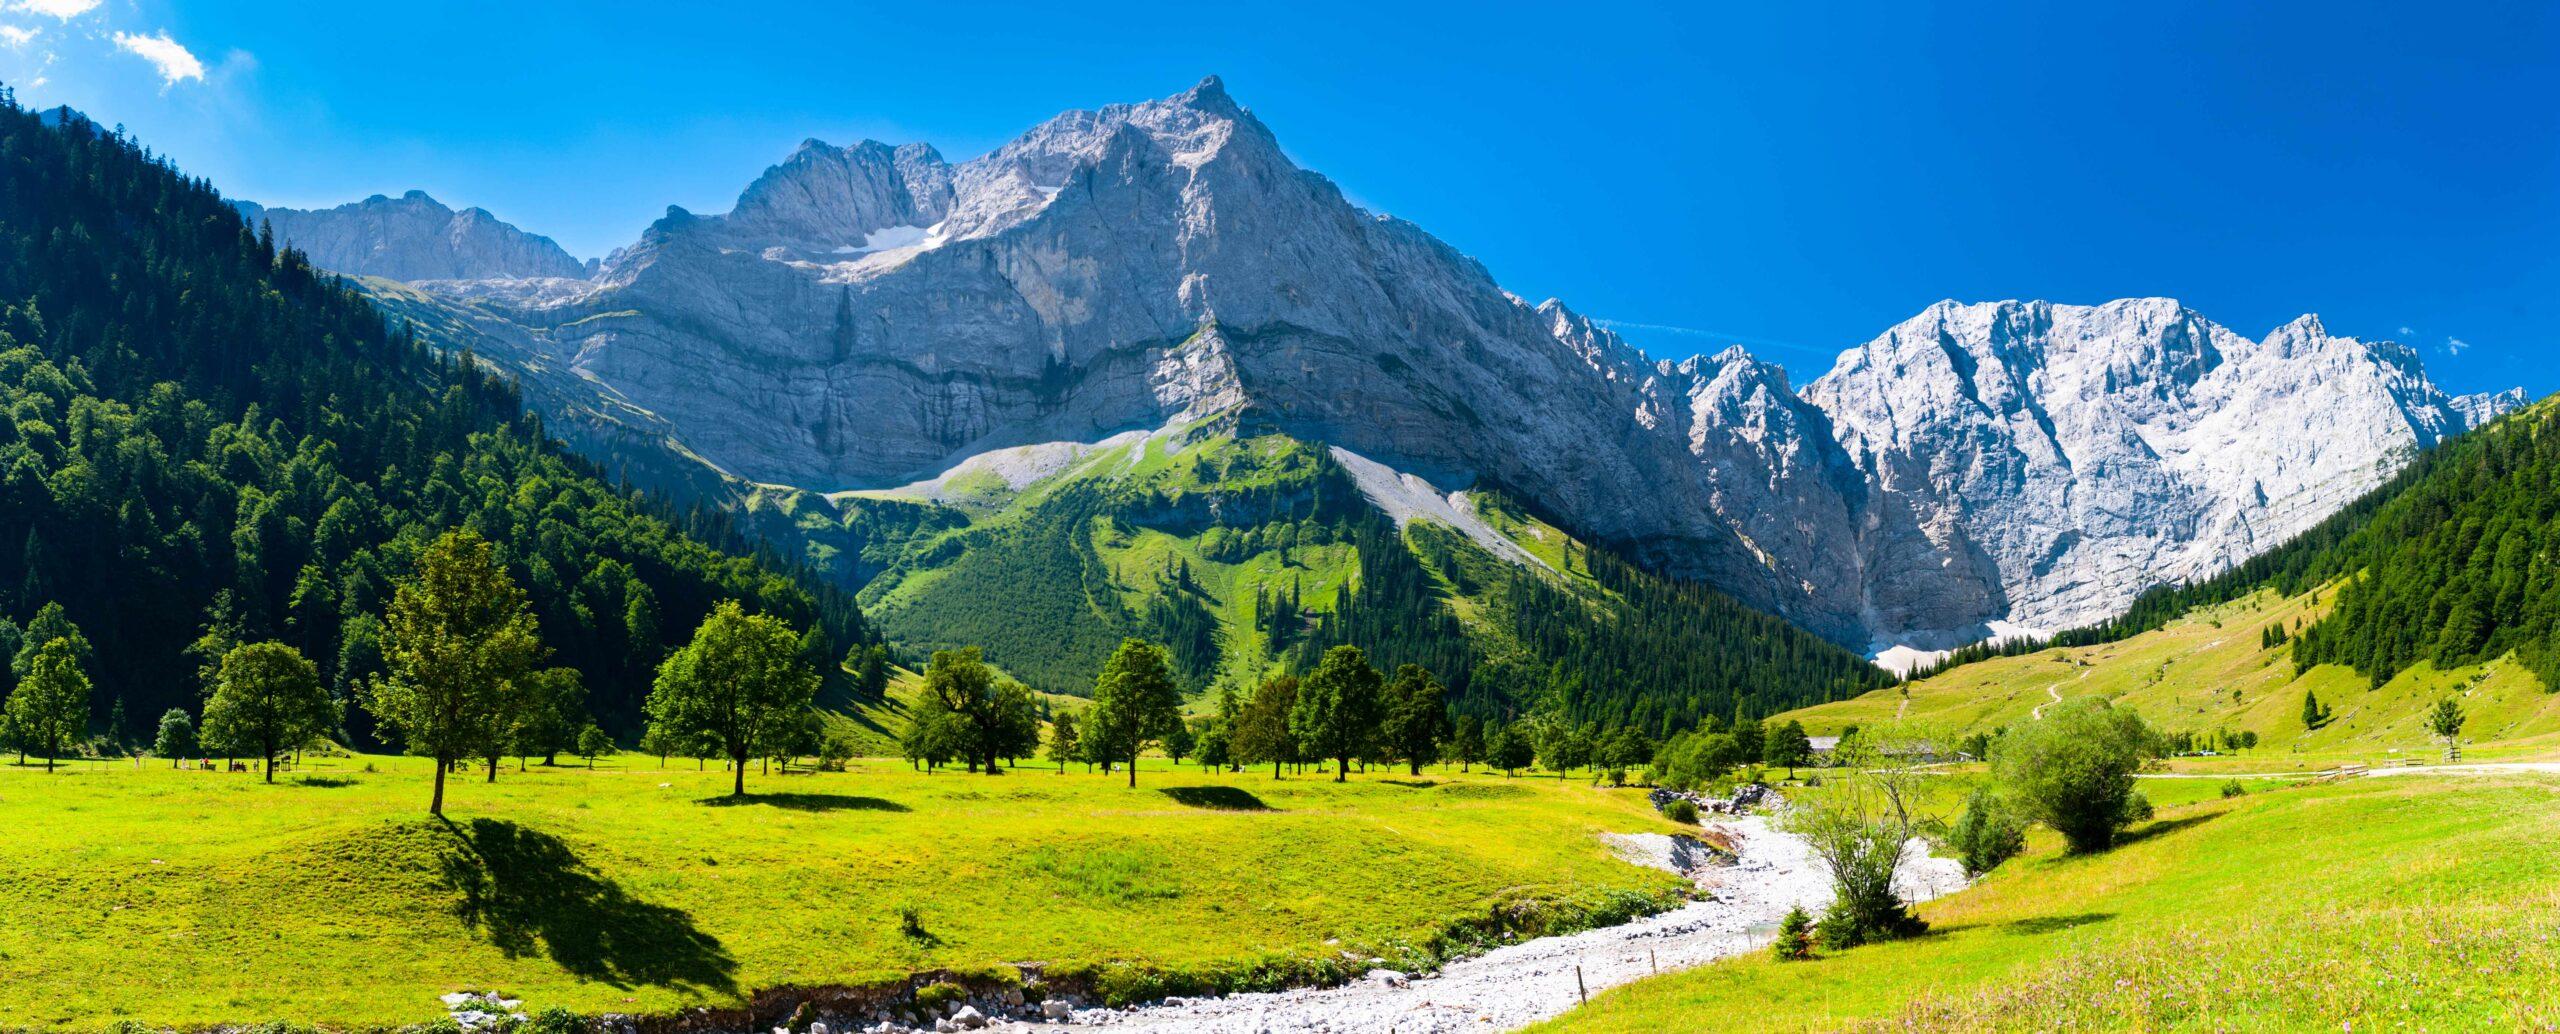 Panoramablick auf die wunderschöne Landschaft in Bayern, Deutschland